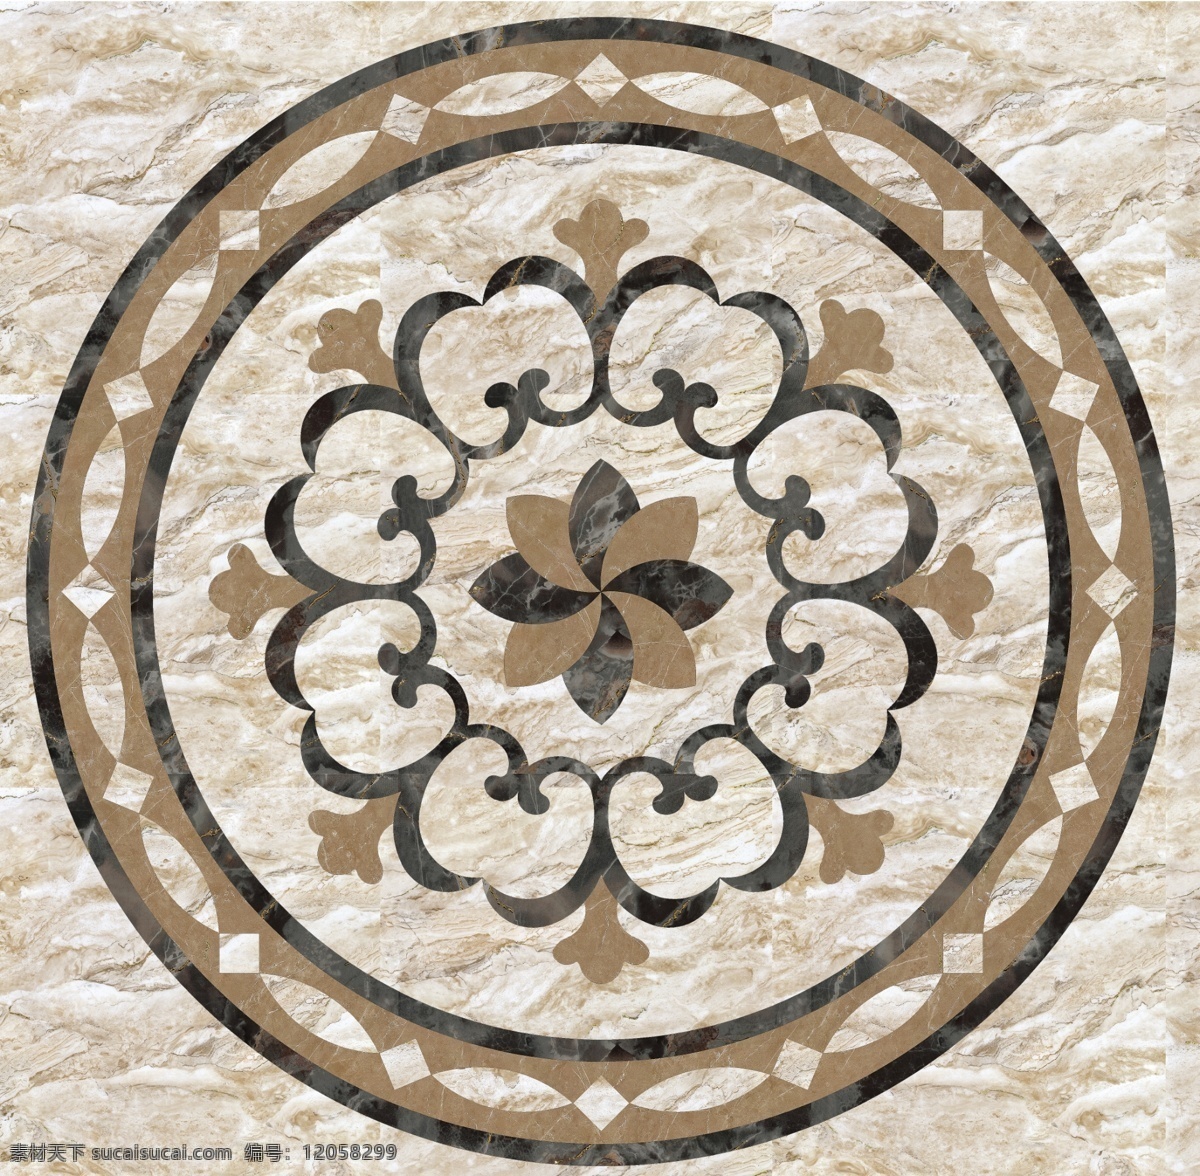 圆形 系列 地面 水刀 拼花 装饰 图案 欧式风格 室内设计 贴图